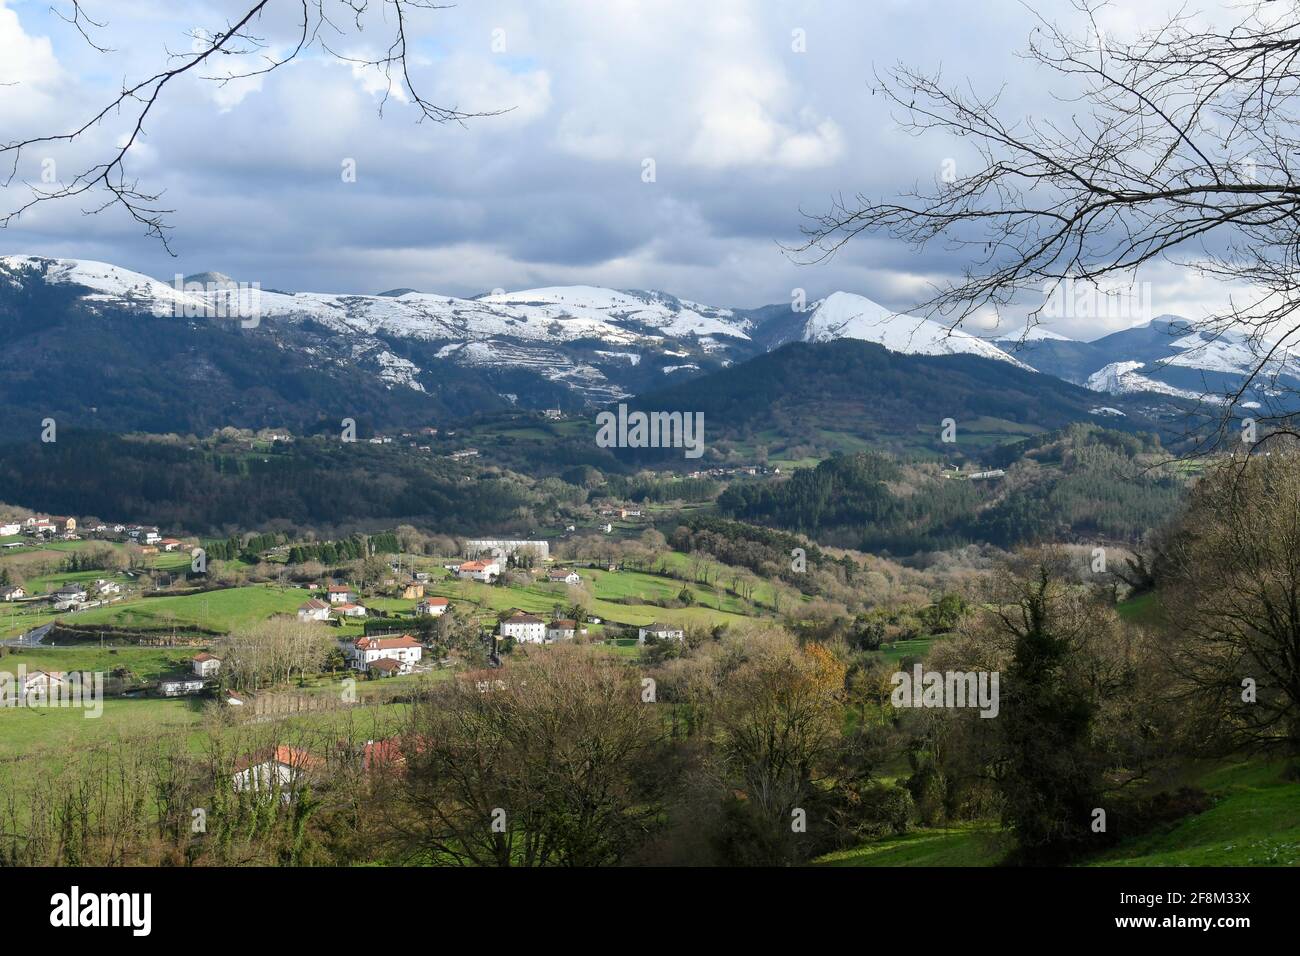 Vallée typique du pays Basque avec les montagnes enneigées en arrière-plan Banque D'Images